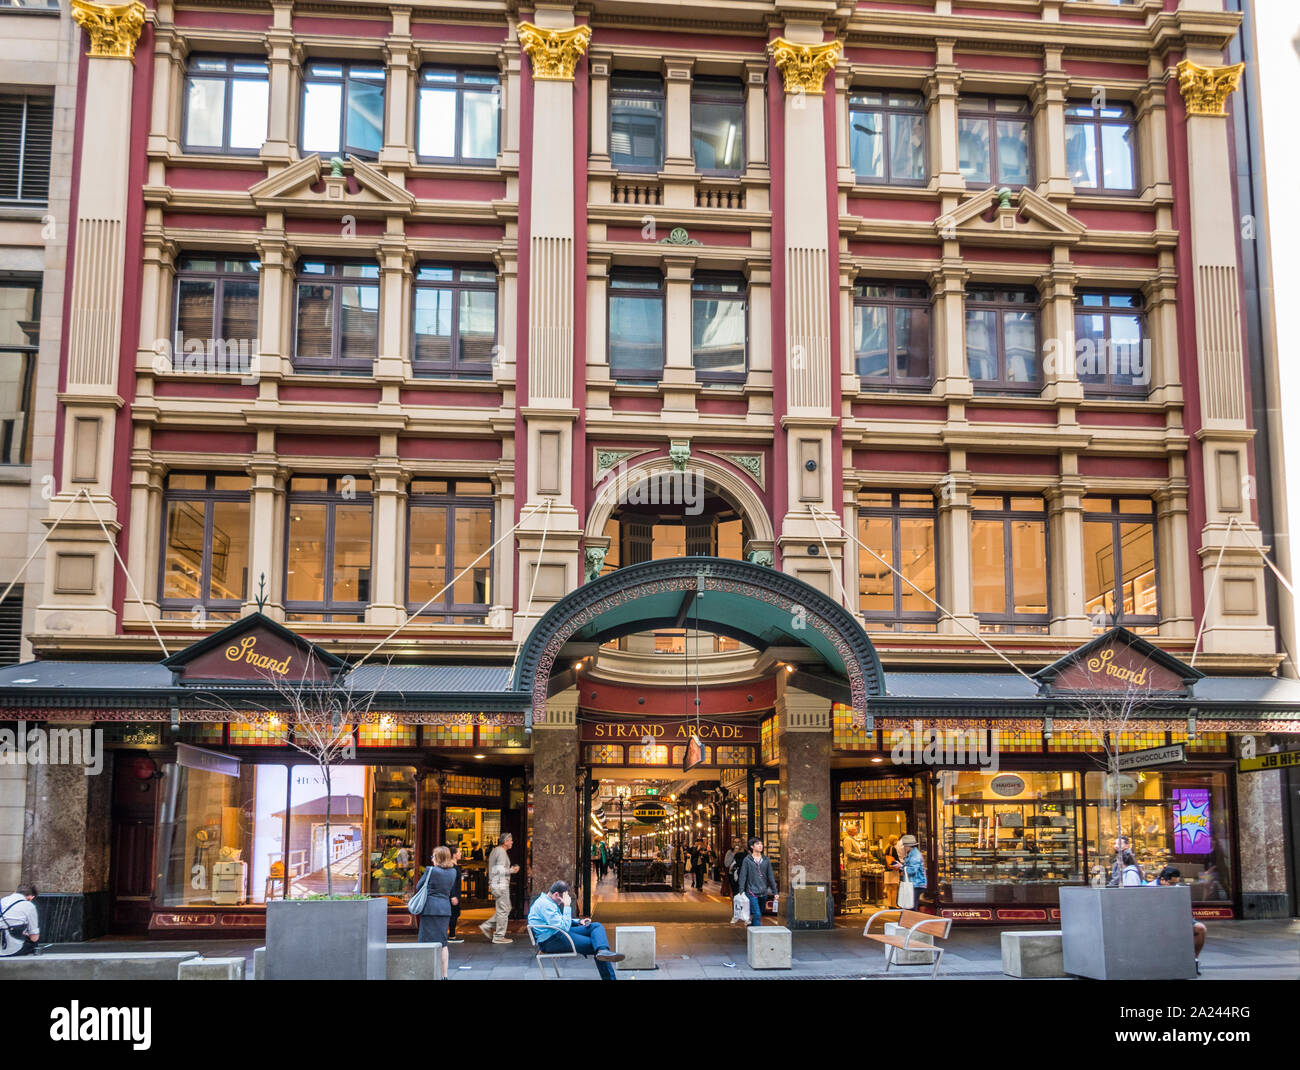 La liste du patrimoine mondial de style victorien Strand Arcade à Pitt Street, Sydney CBD, New South Wales, Australie Banque D'Images